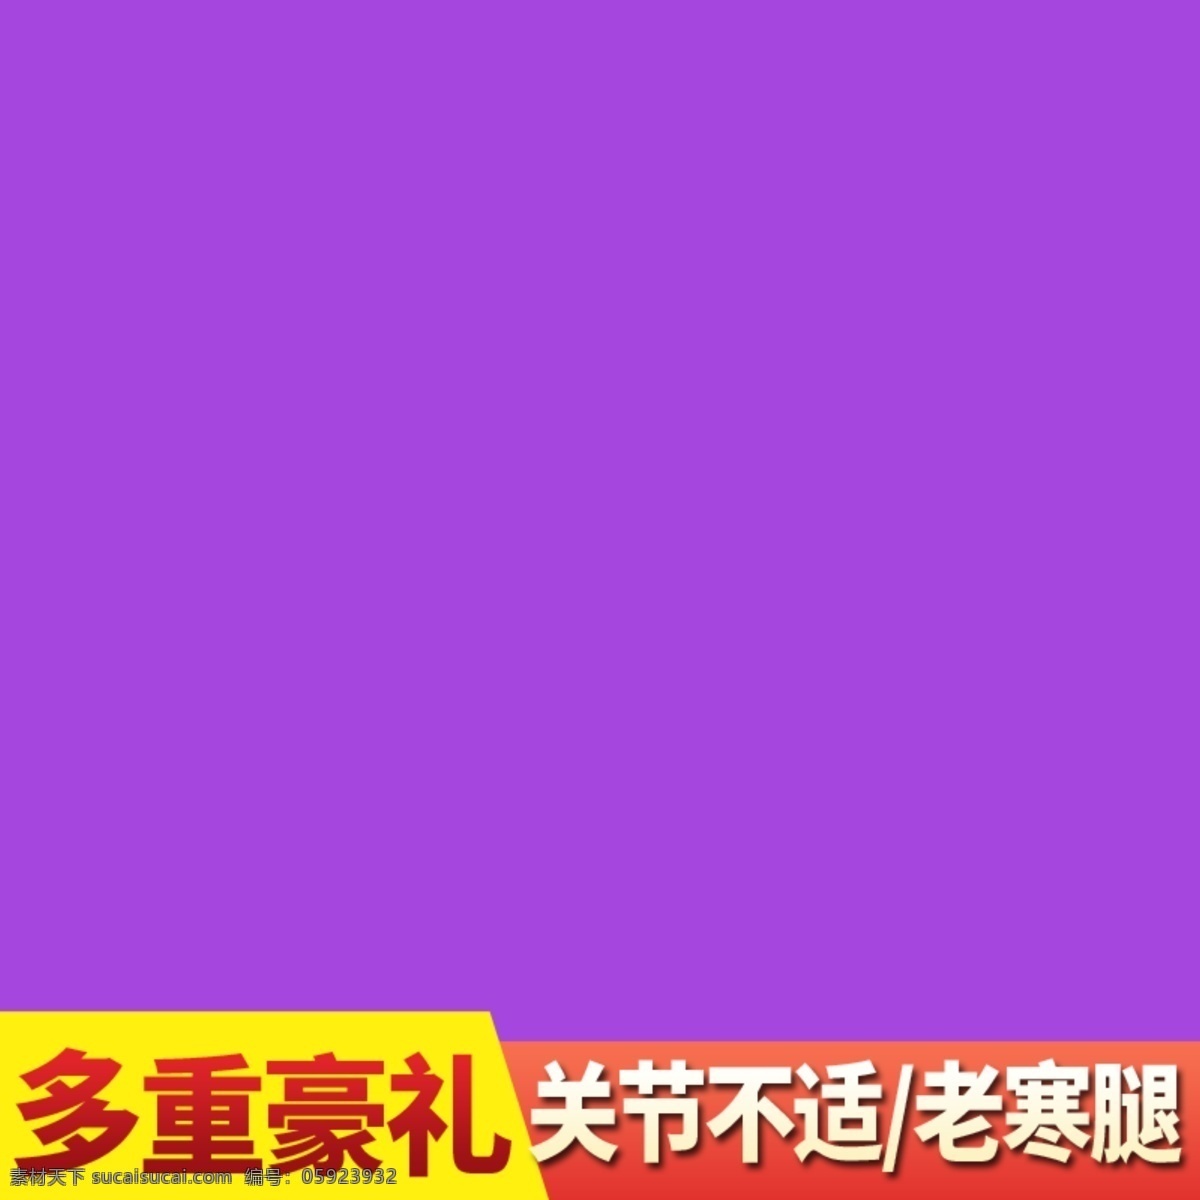 紫色 背景 主 图 标签 淘宝 电商 直通车 科幻促销推广 主图背景设计 科幻 主图 科技 商务 天猫主图